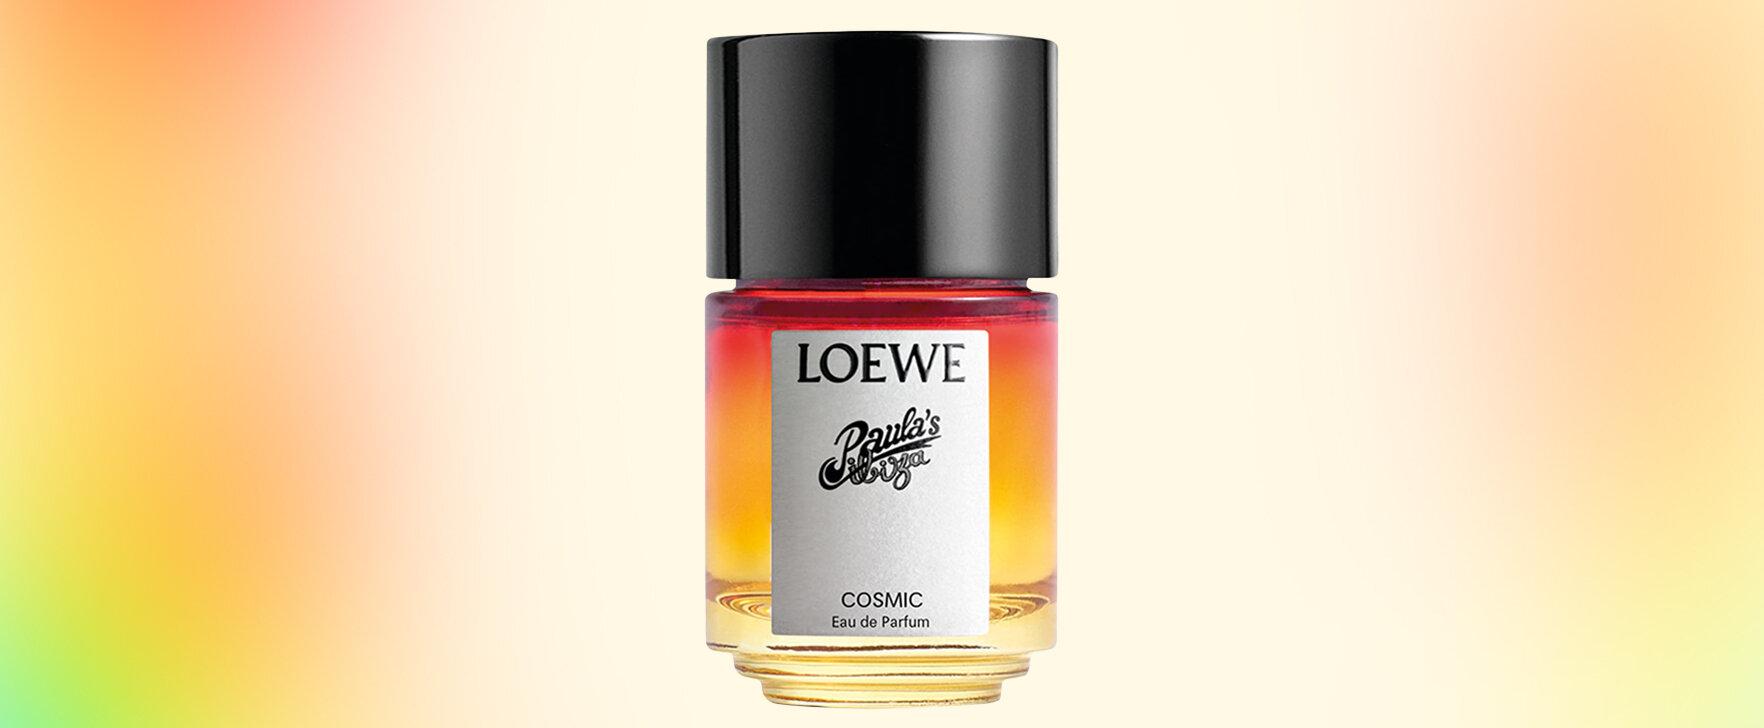 Kosmische Inspiration: Das neue Eau de Parfum „Paula's Ibiza Cosmic“ von Loewe